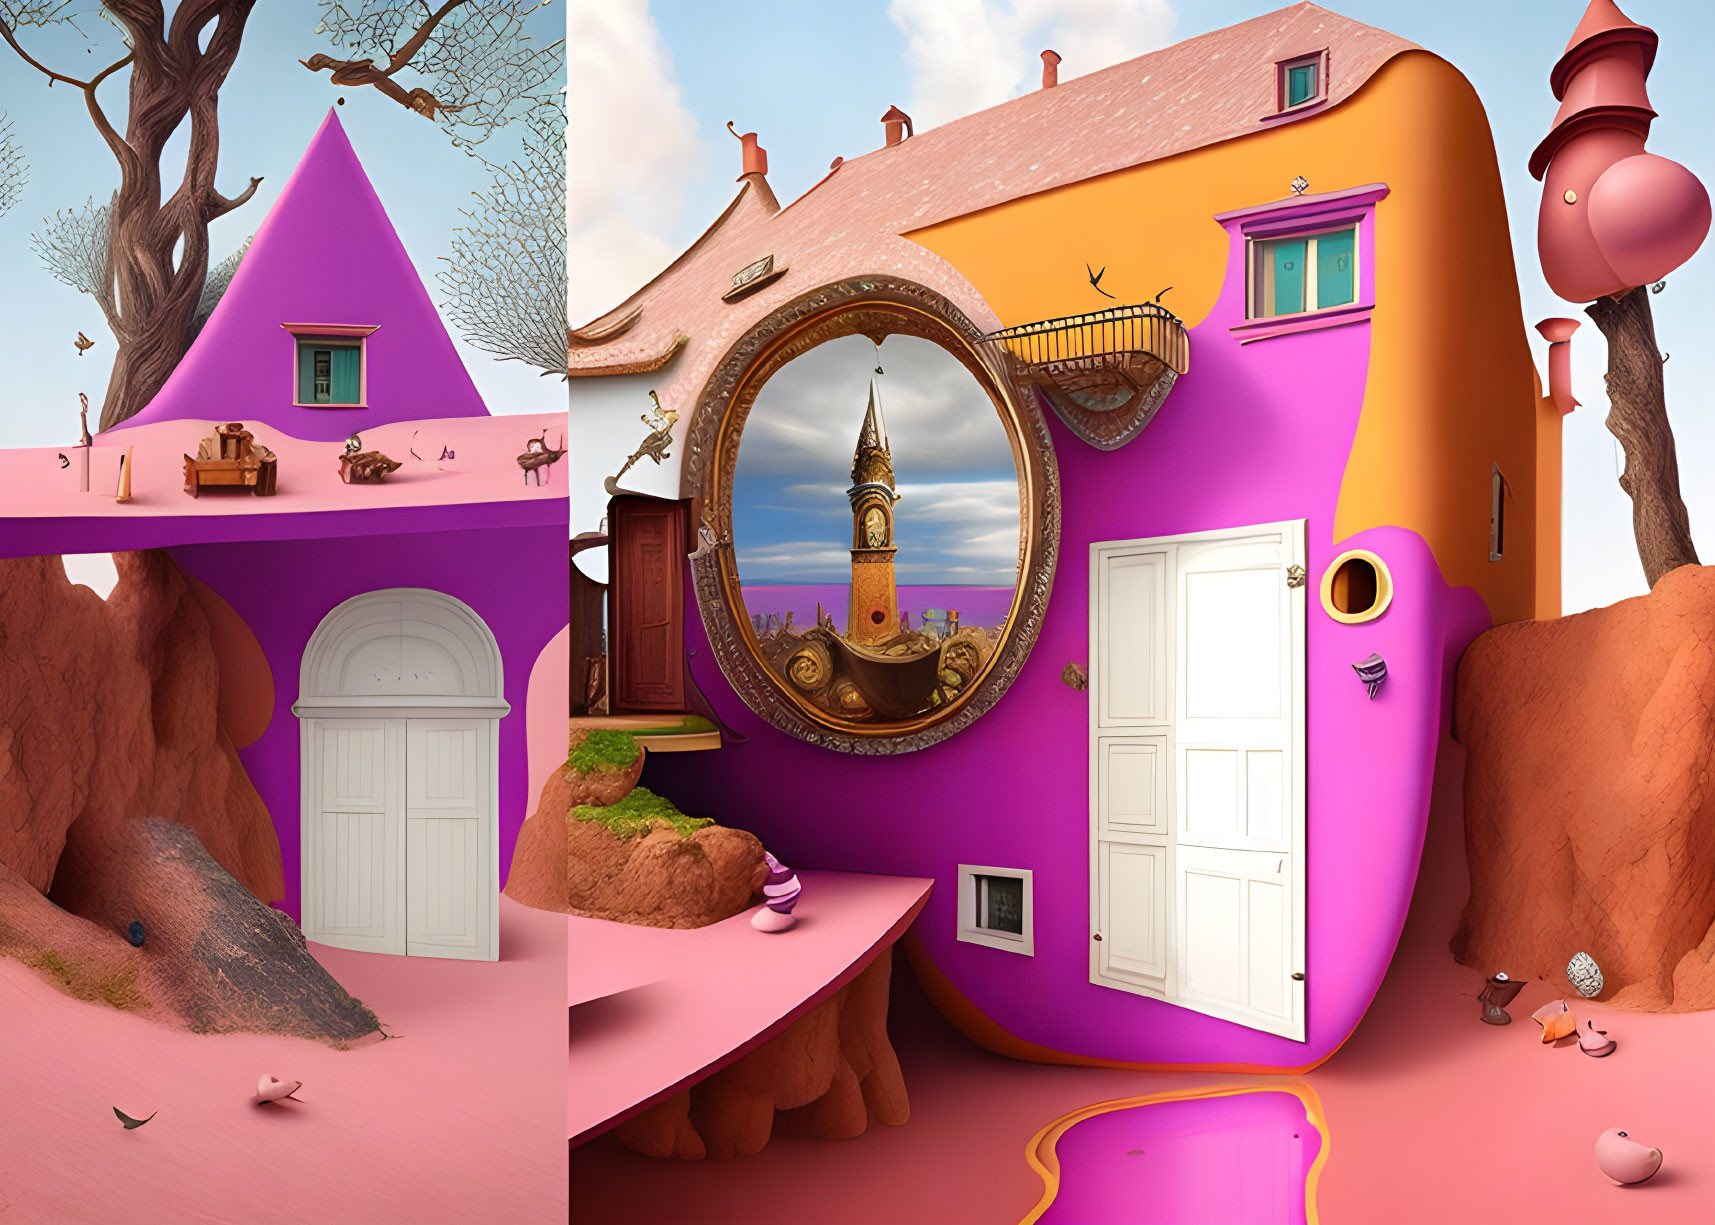 Colorful Surreal Artwork: Unique Houses on Vibrant Landscape